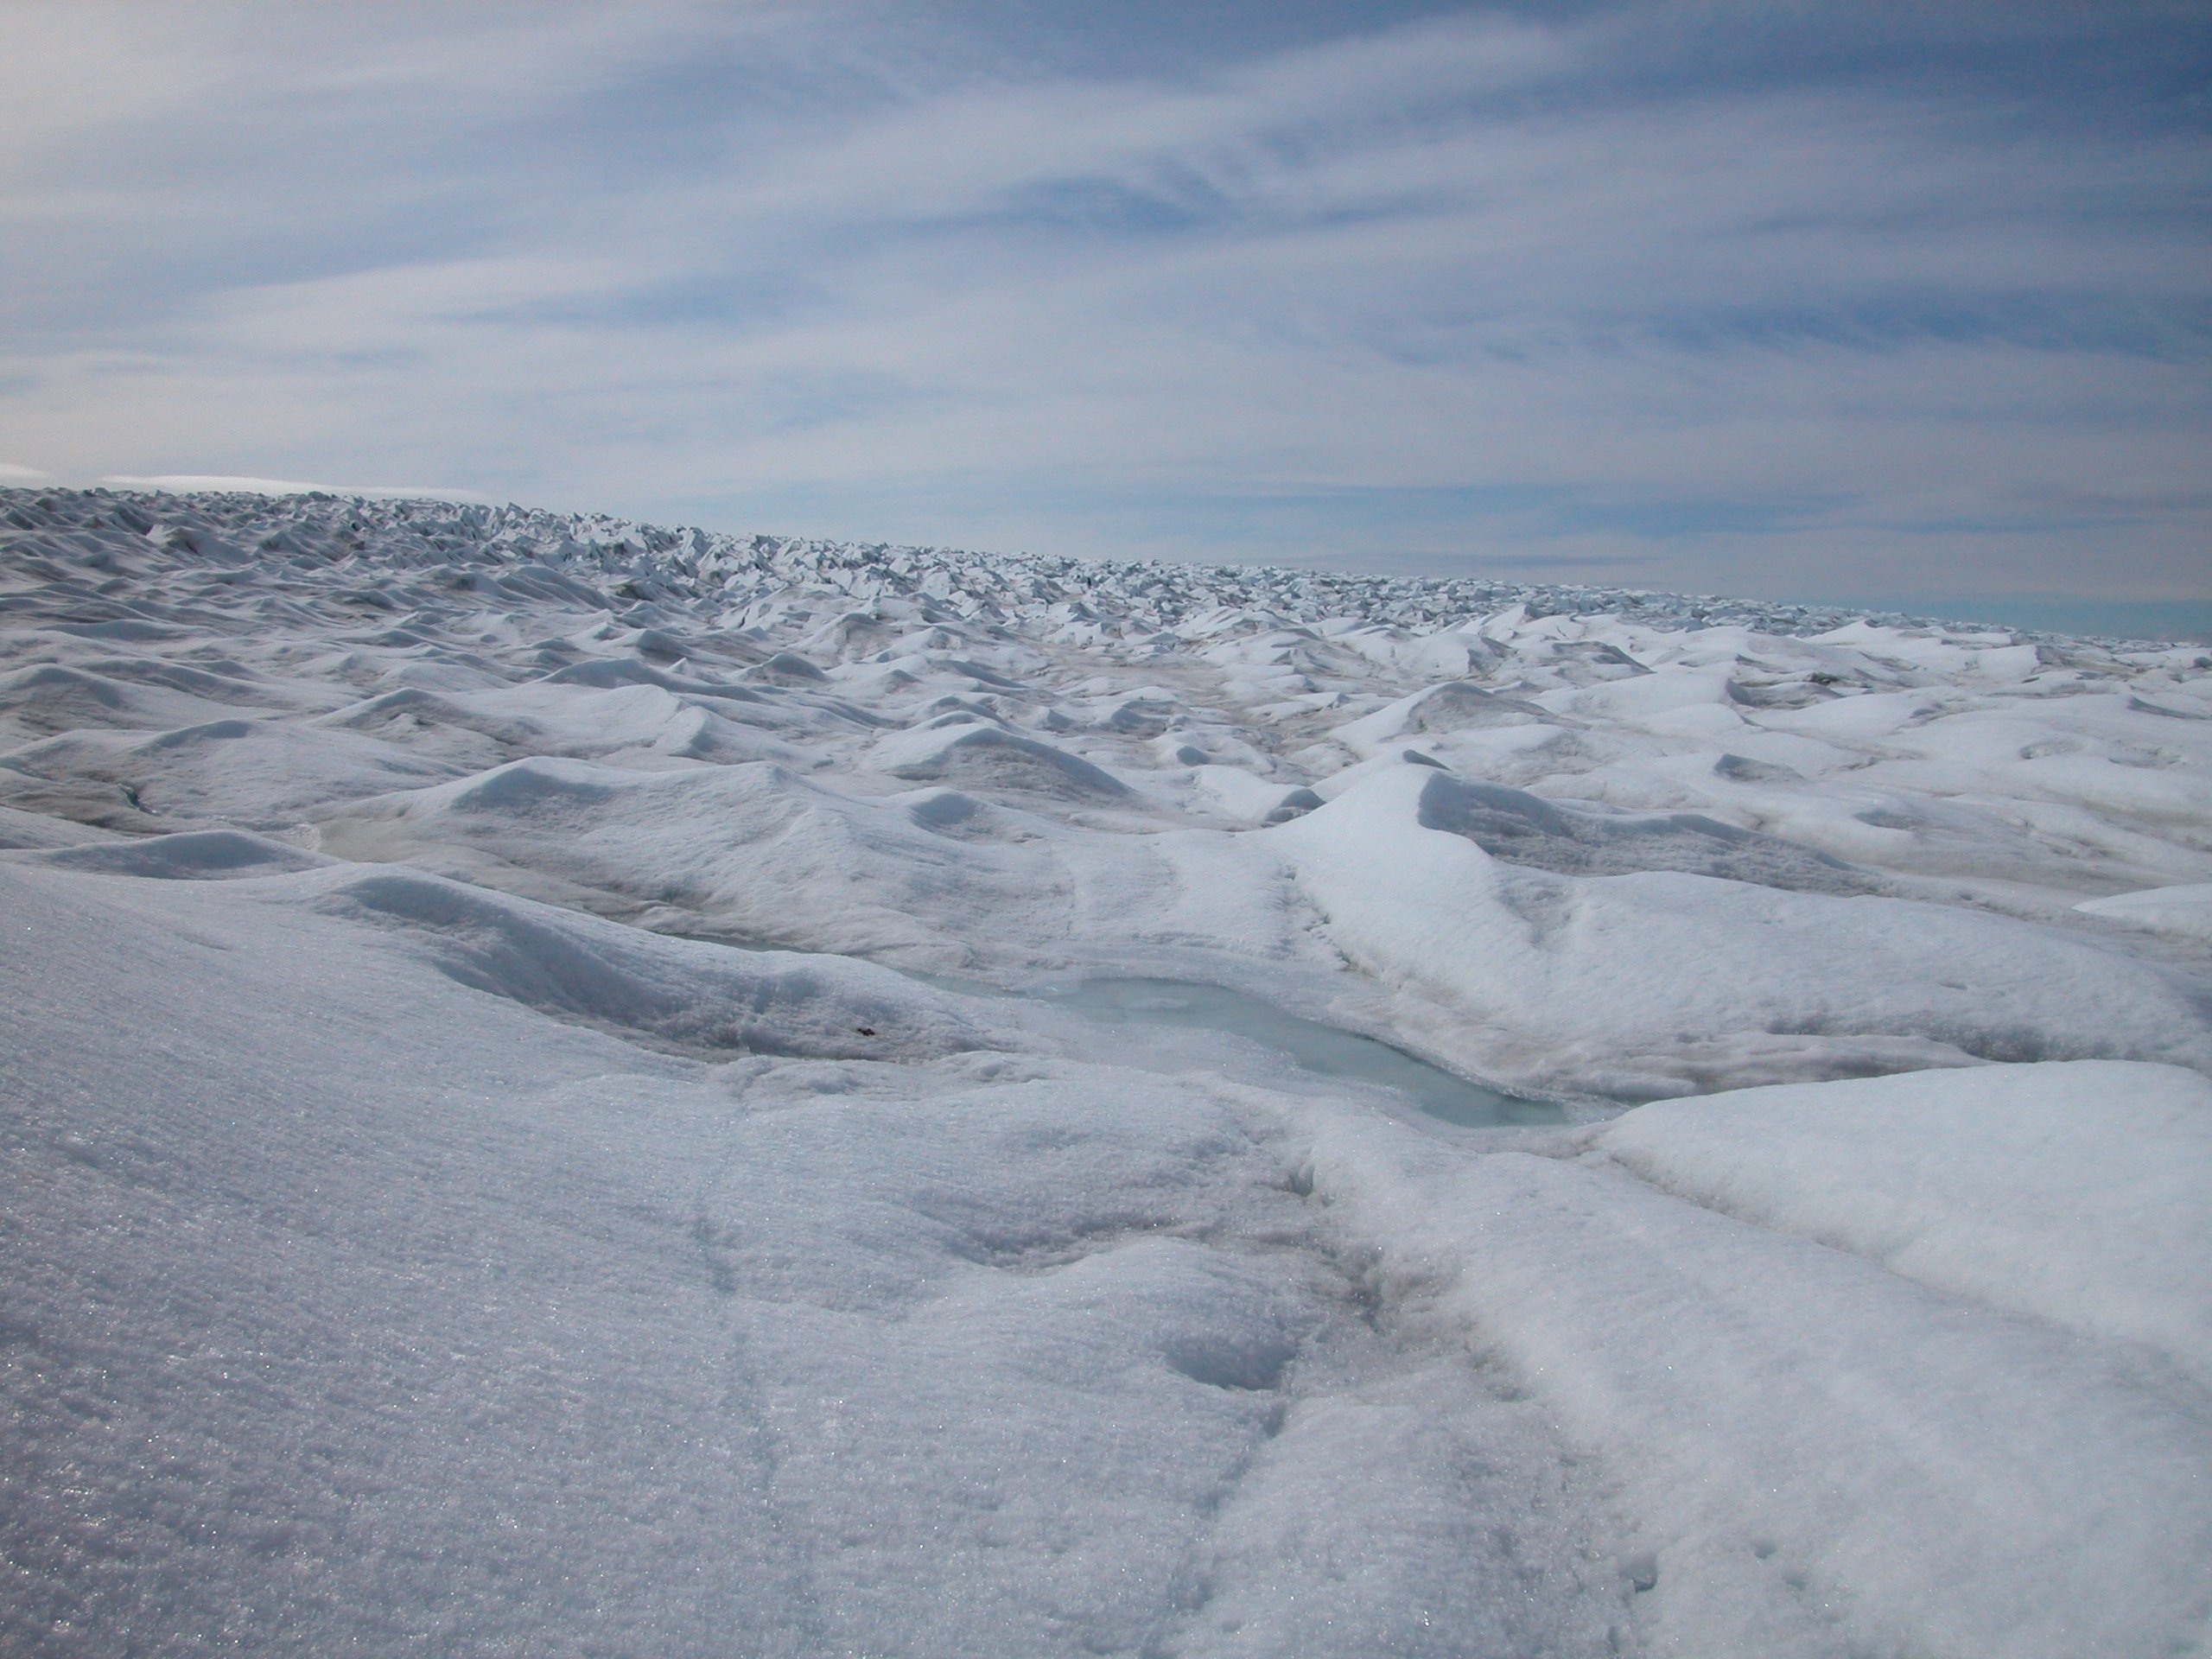 Хребты ледовитого океана. Арктика тундра Ледяная пустыня Гренландия. Арктика тундра. Арктика тундра зима. Арктические пустыни и тундра.